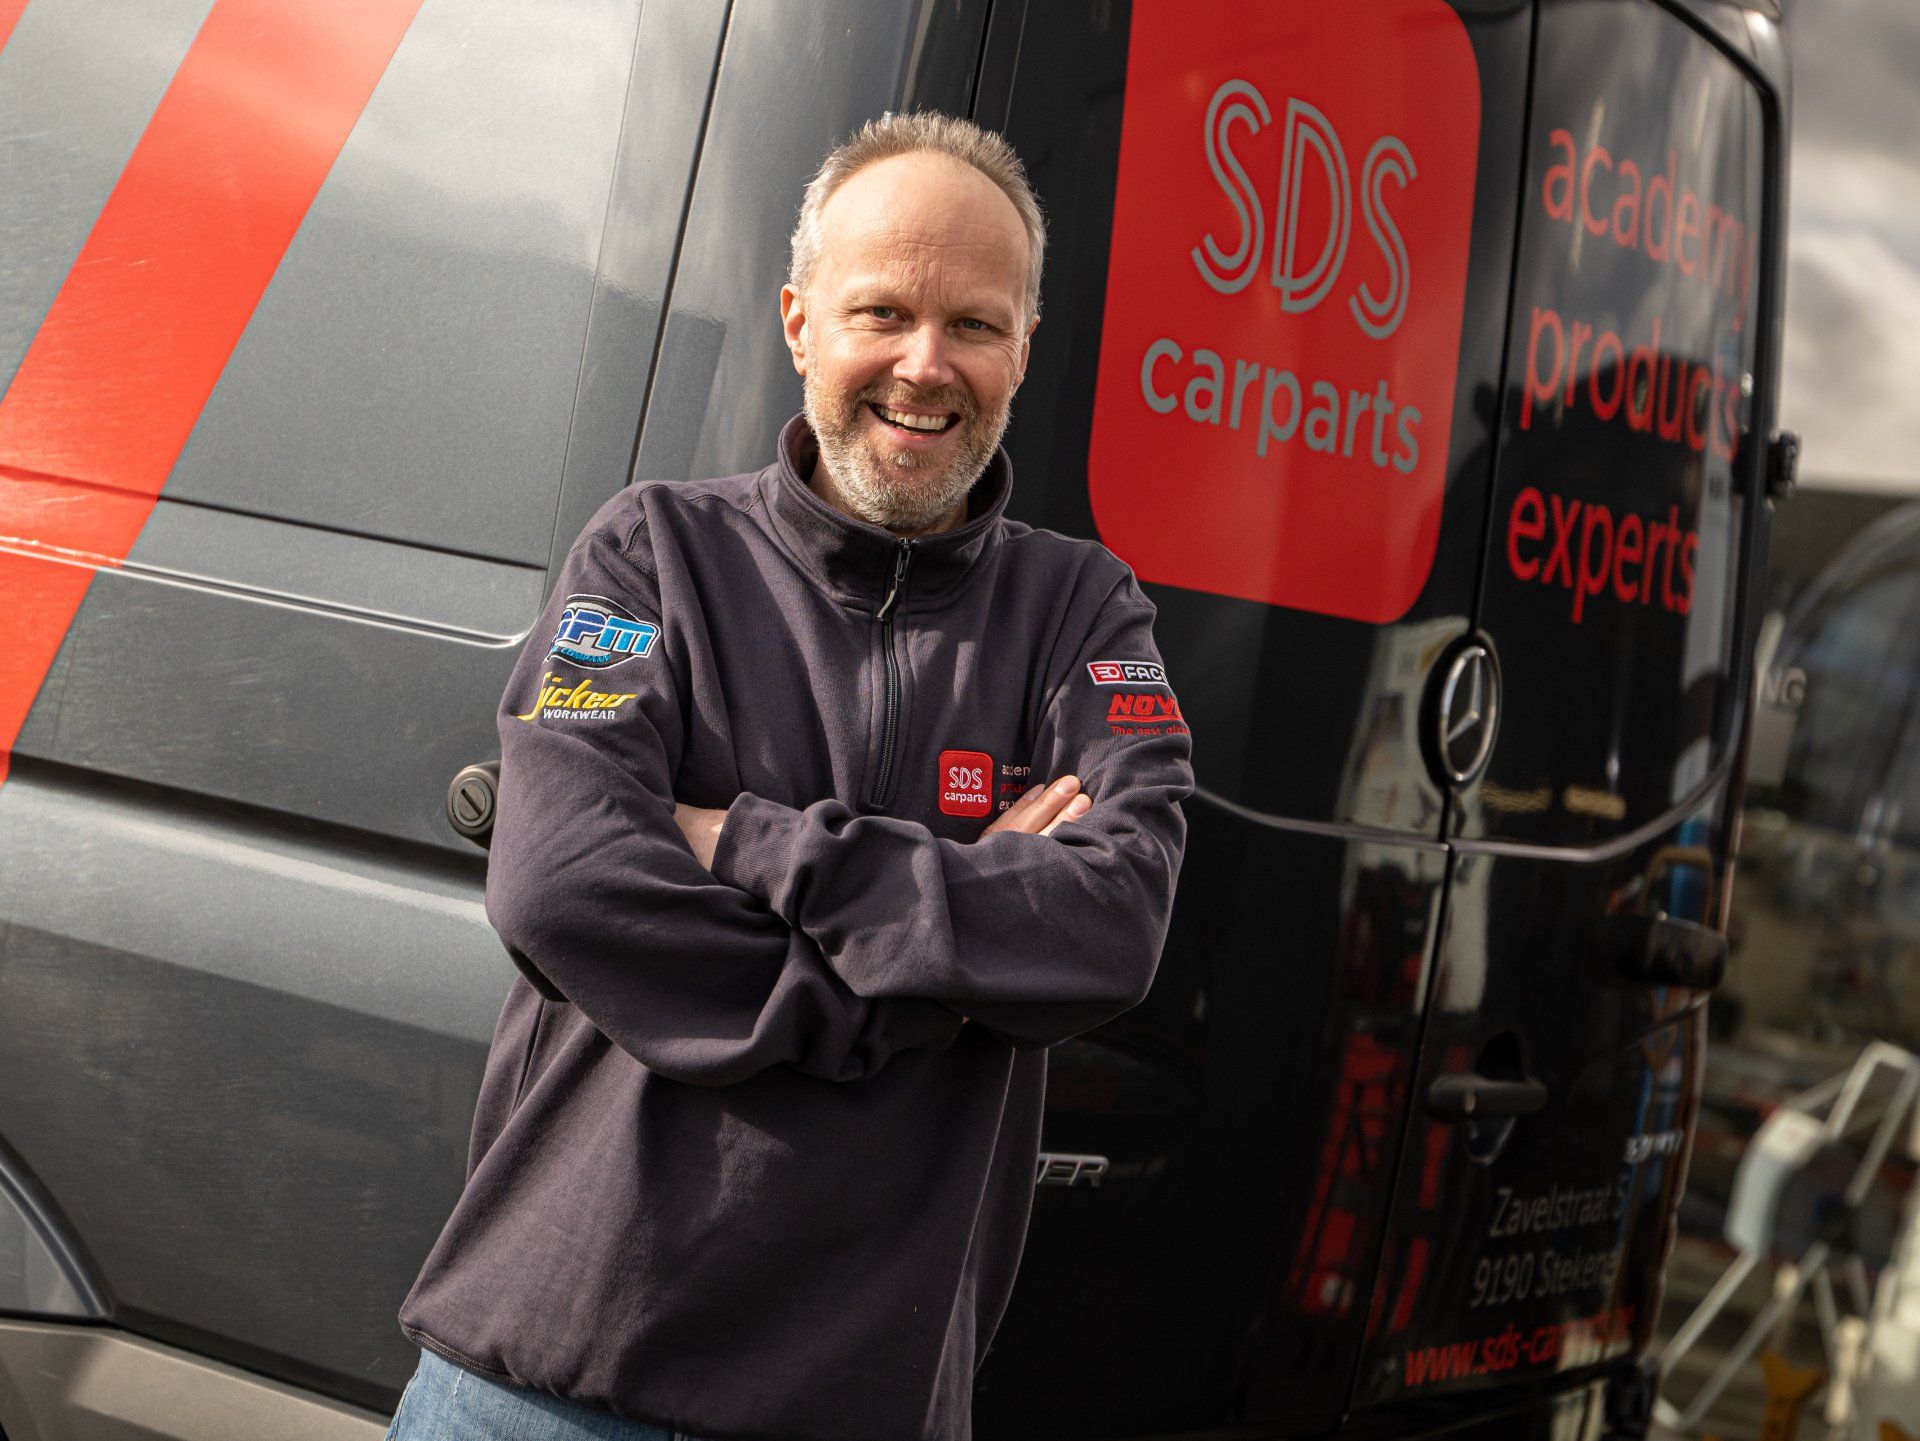 SDS Carparts | Chauffeur | Stefan Van Dam